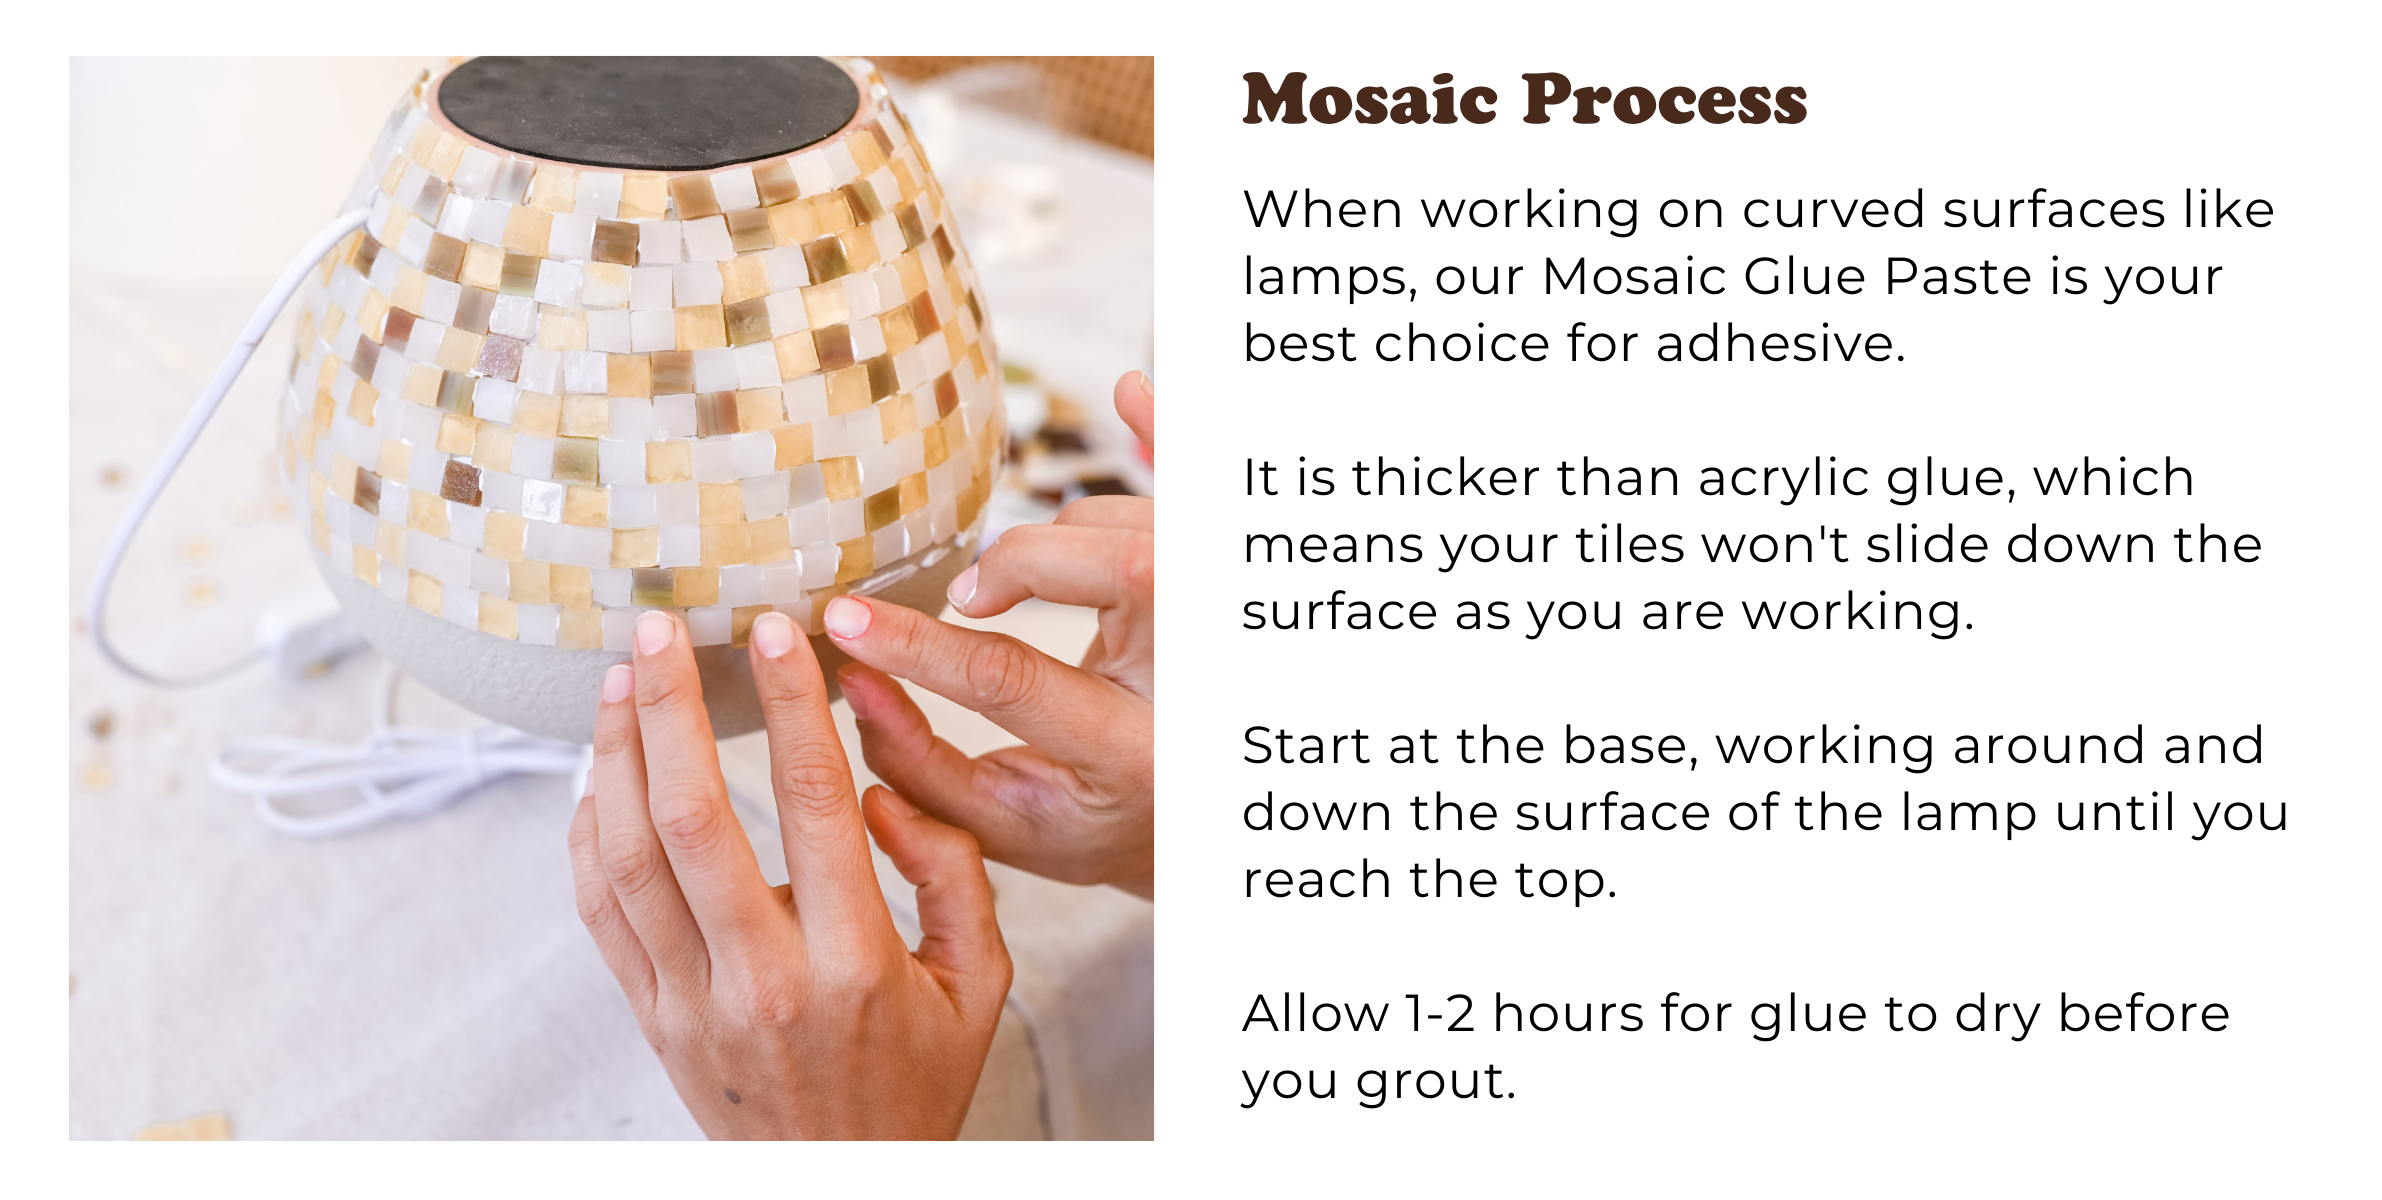 Mosaic process